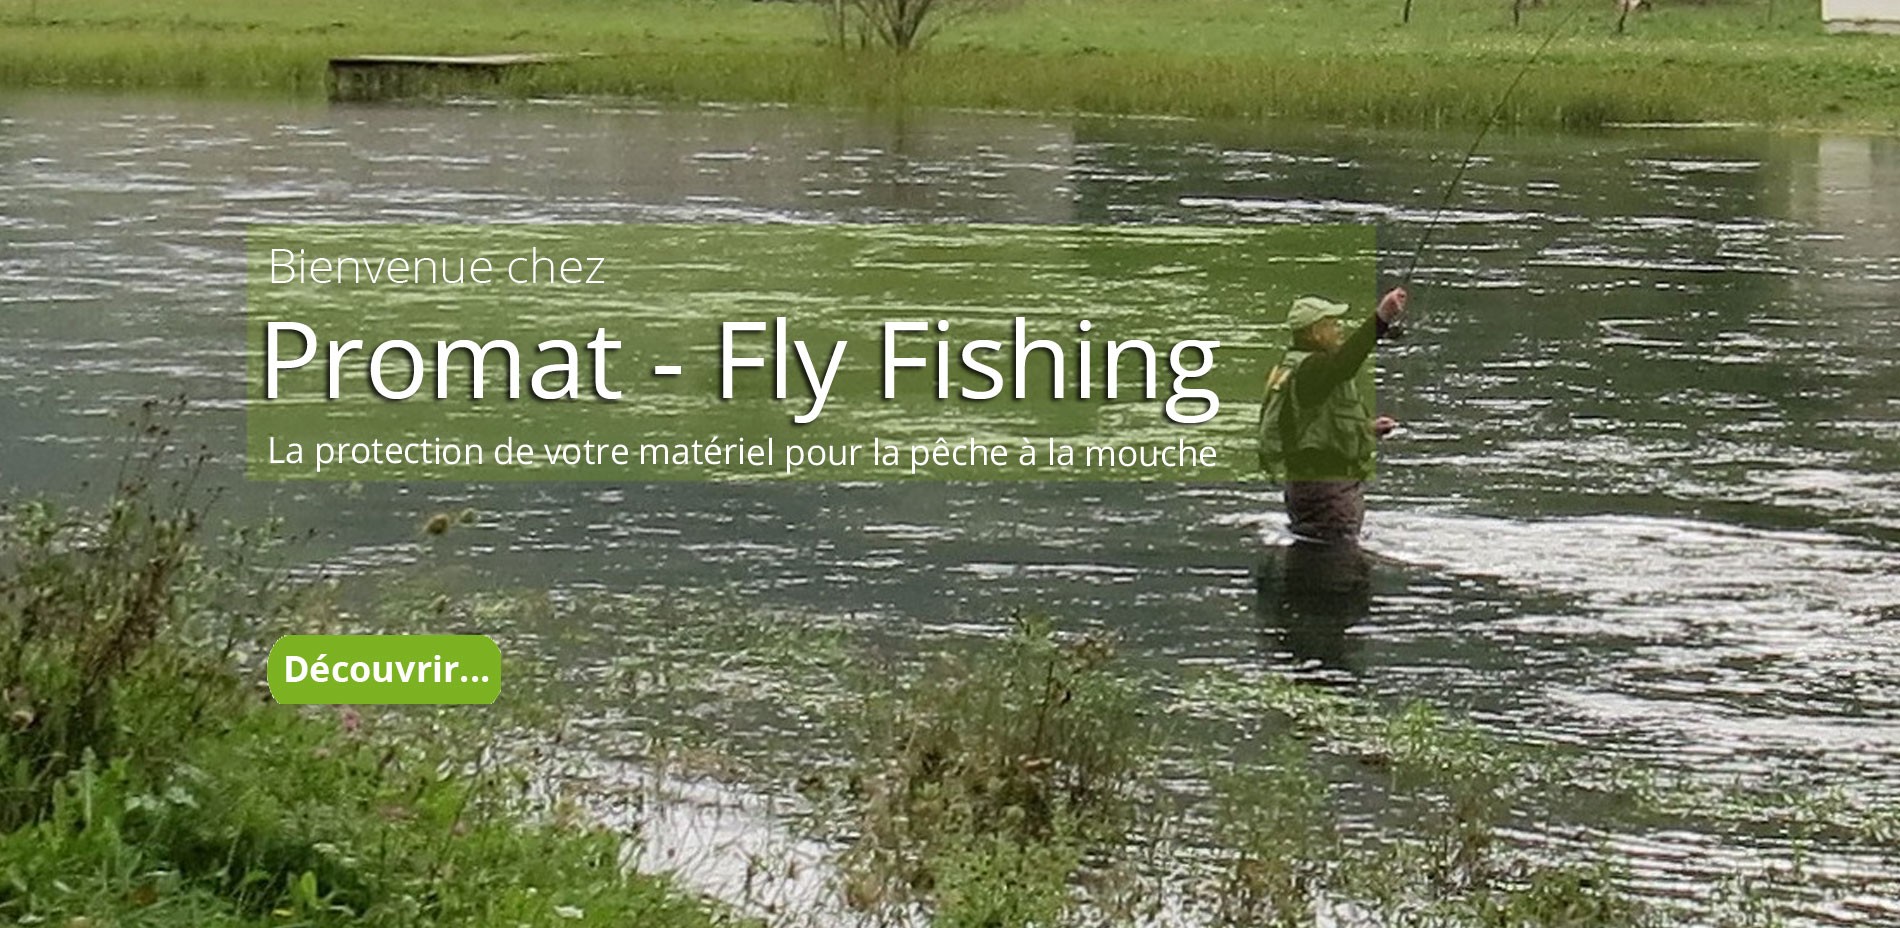 Bienvenue chez Promat Fly Fishing